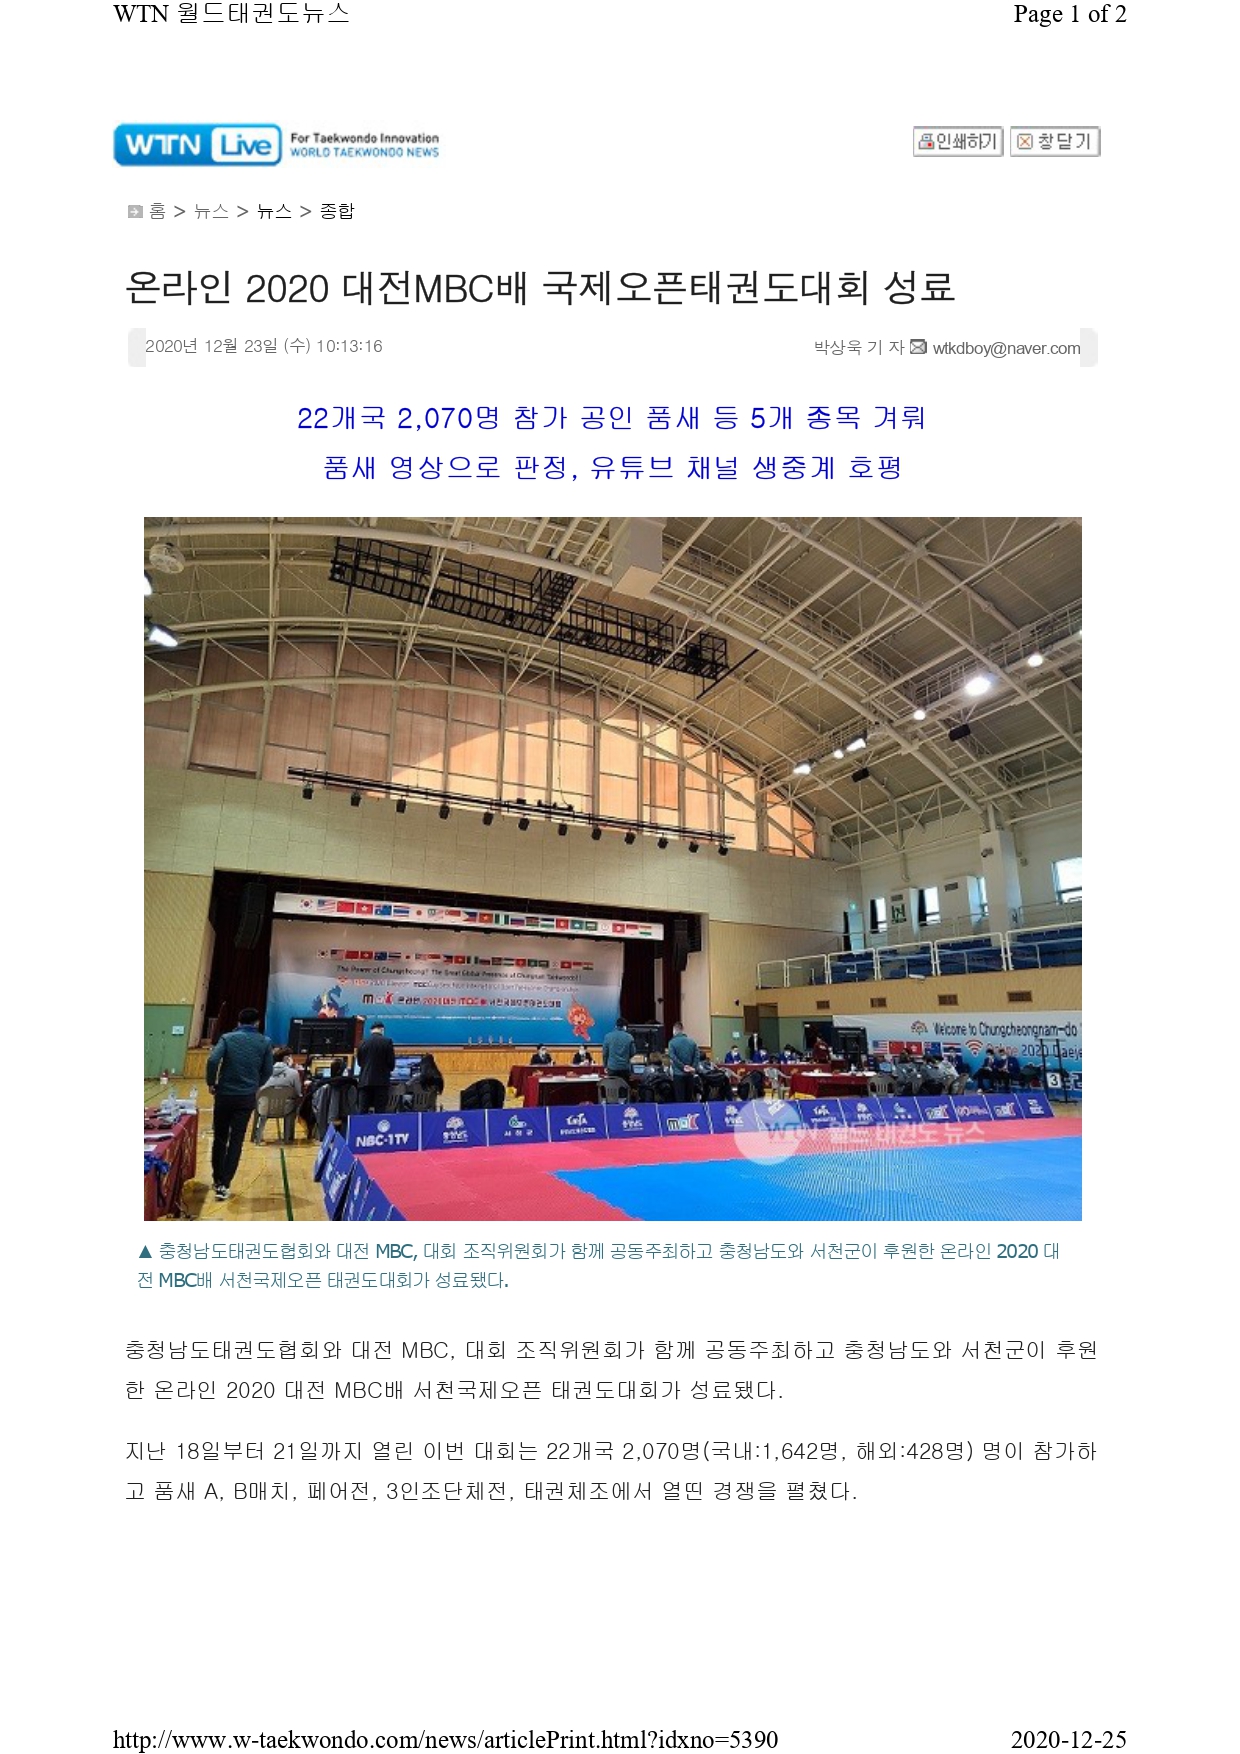 [월드태권도뉴스] 온라인 2020 대전MBC배 국제오픈태권도대회 성료!_page-0001.jpg